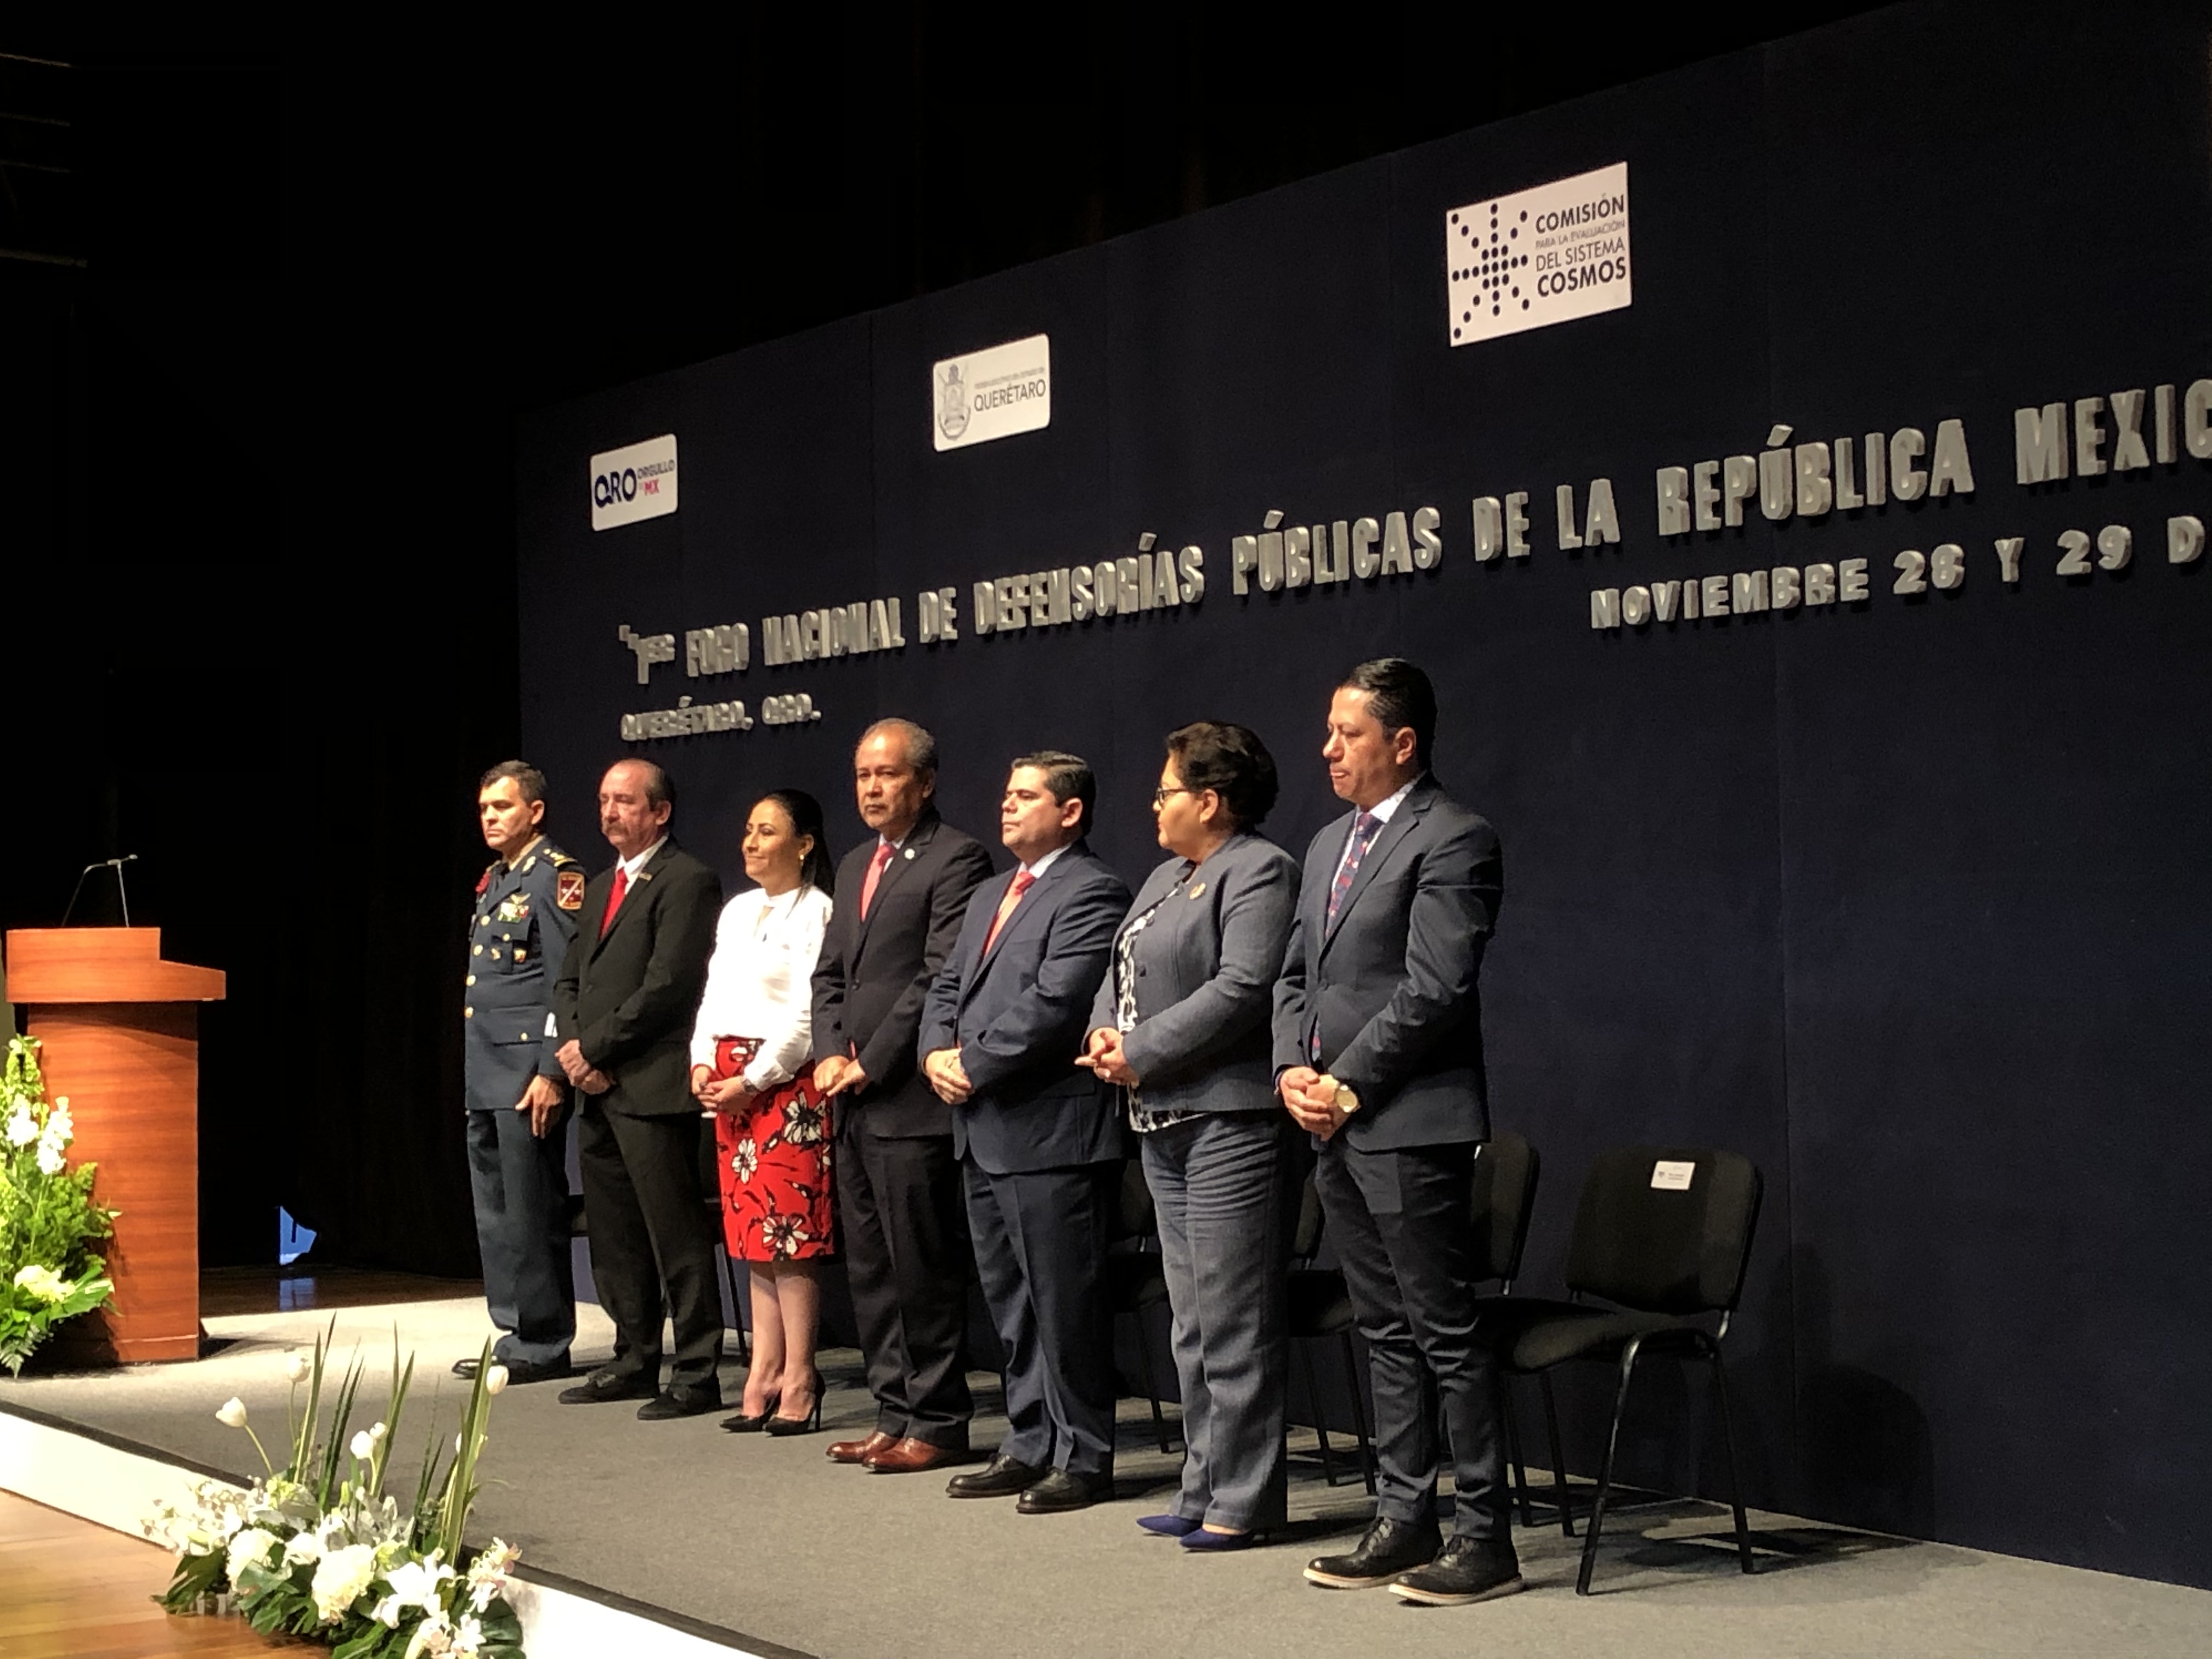  Querétaro será referente nacional en Defensoría Pública: Echeverría Cornejo